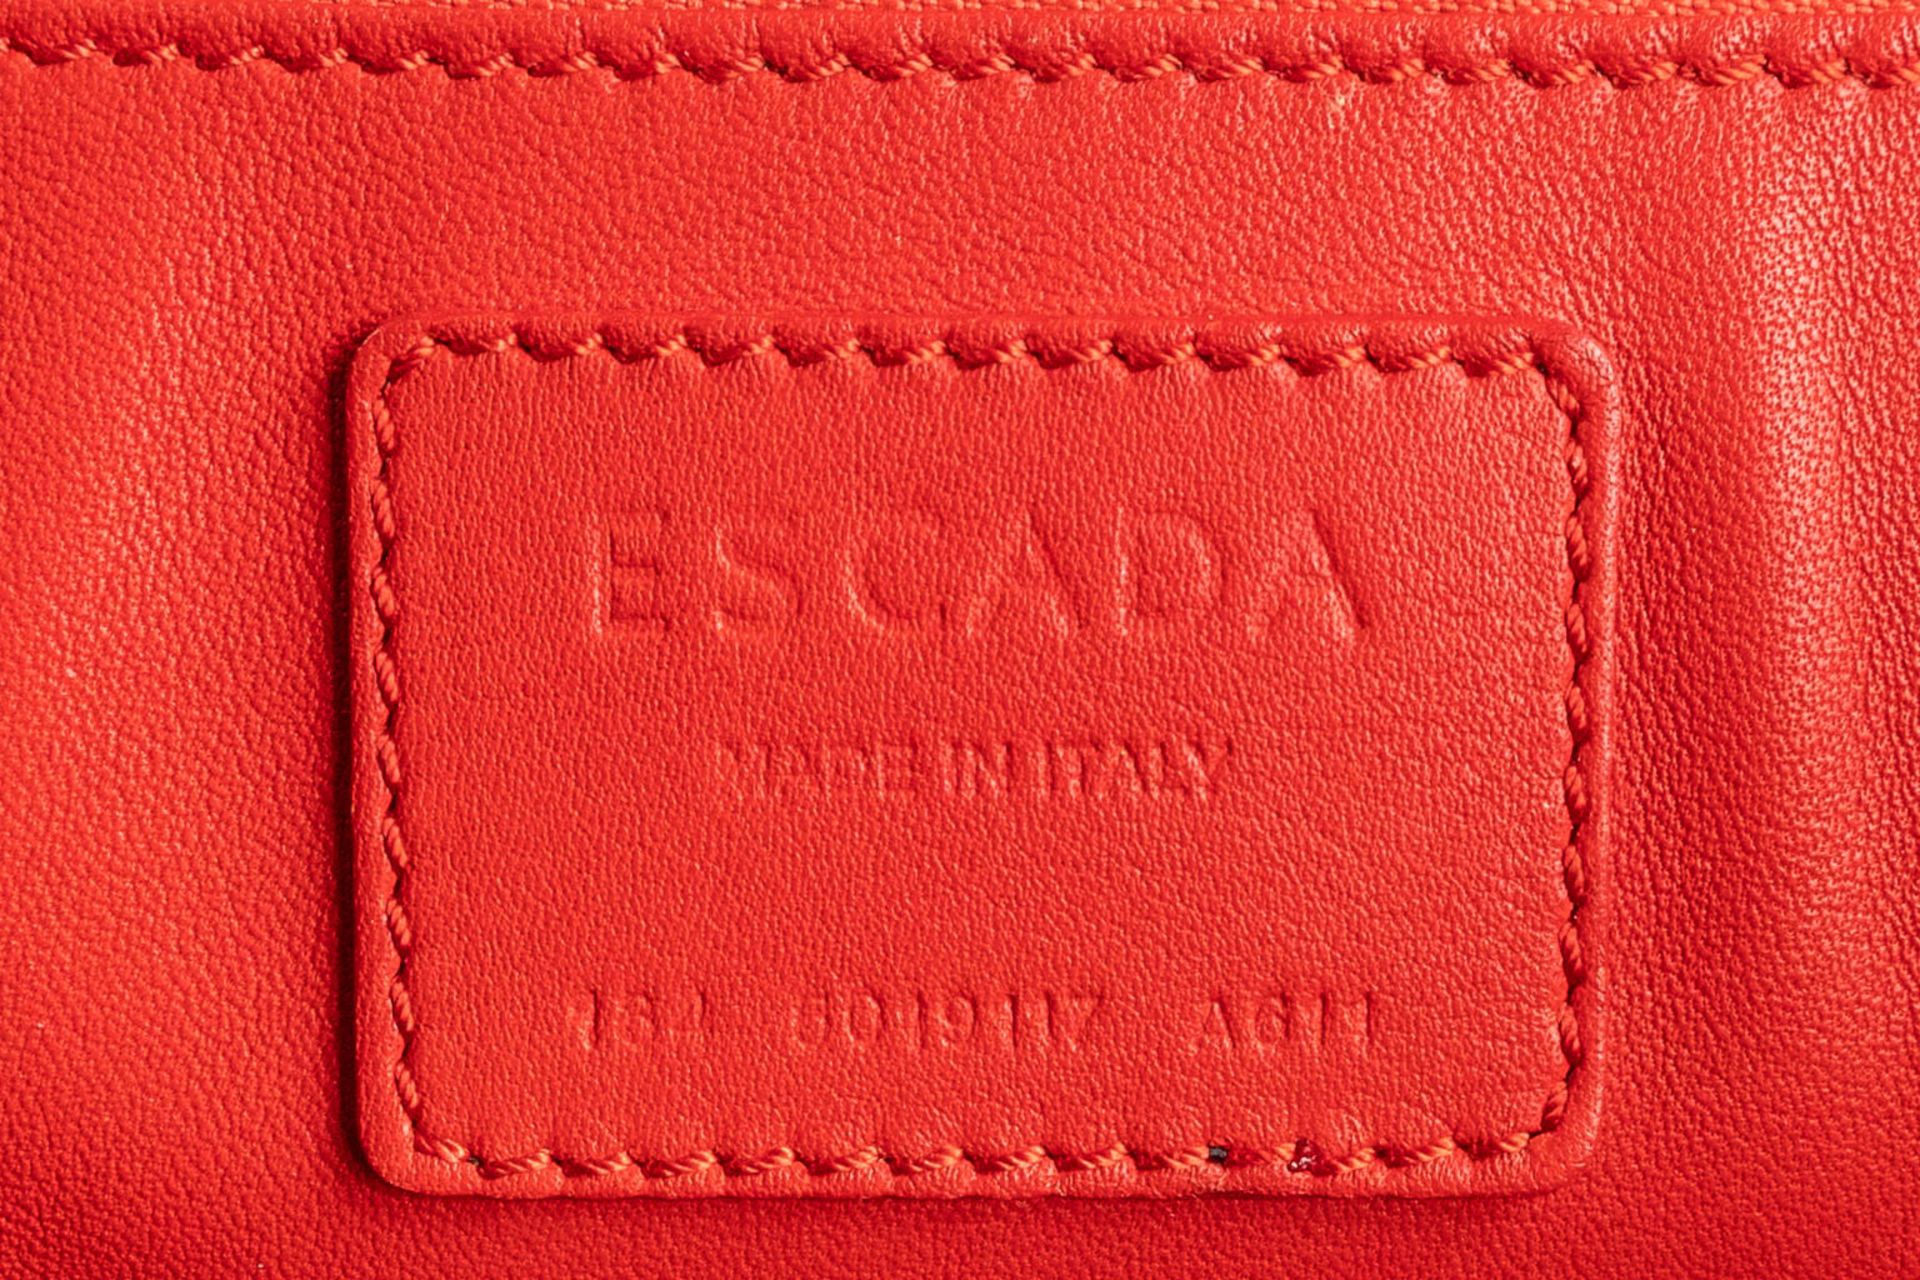 Escada, a handbag made of red leather. (W:33 x H:28 cm) - Bild 16 aus 17